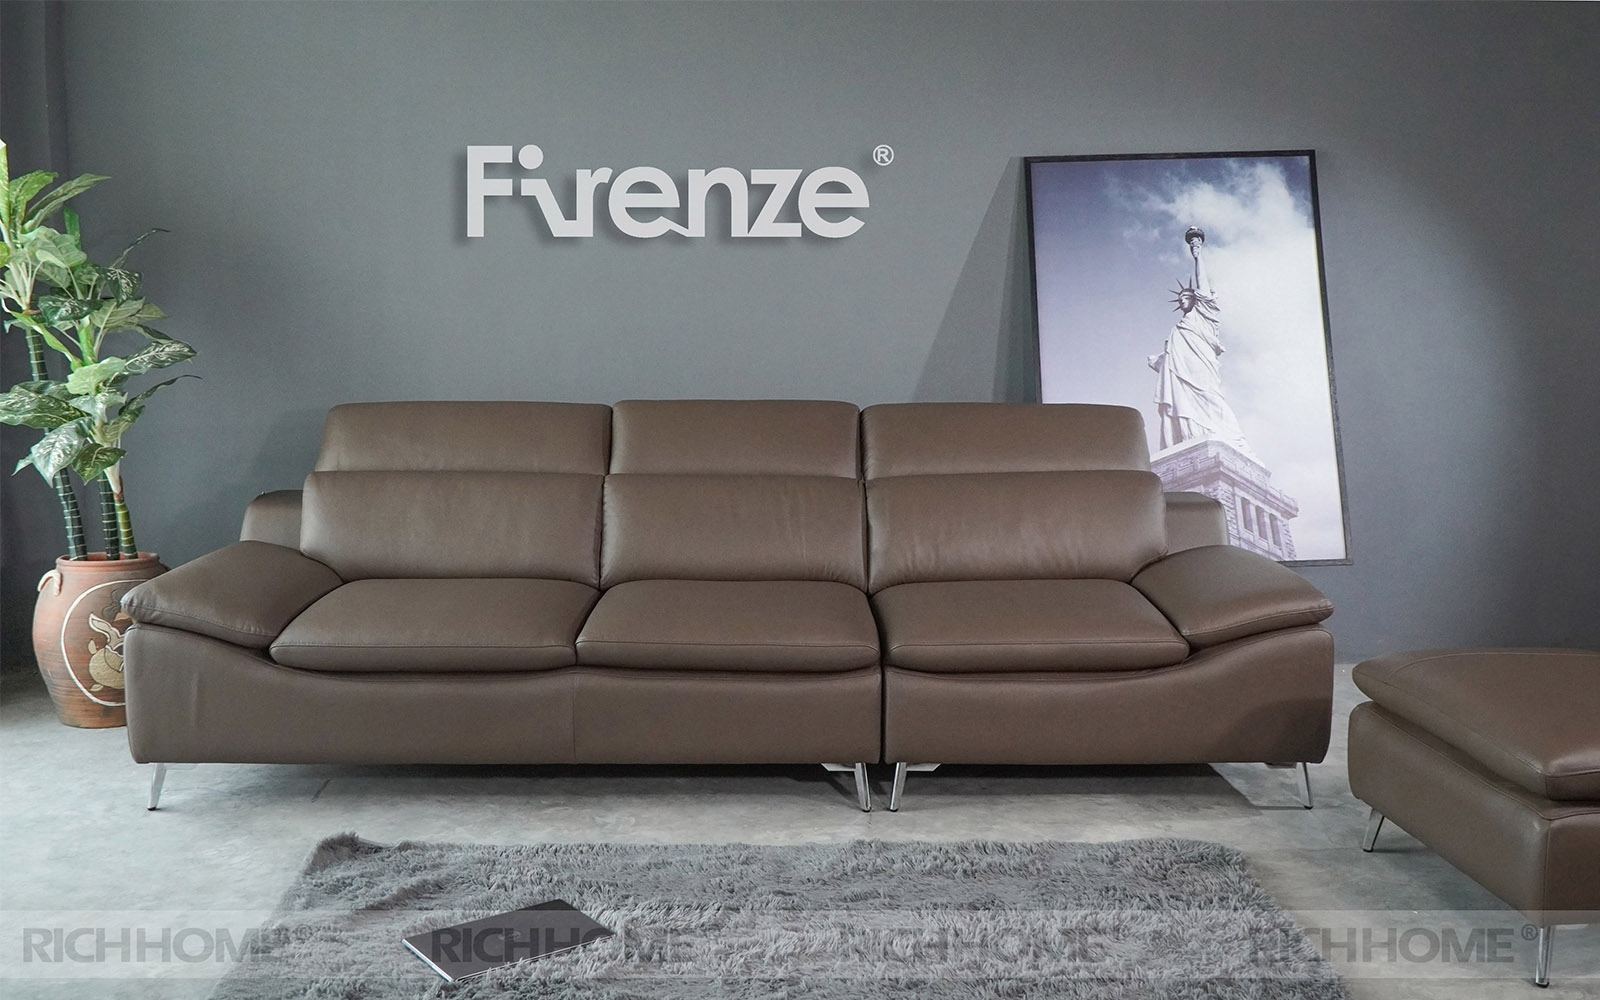 Đa dạng sắc màu ghế sofa nhập khẩu trên thị trường nội thất - Ảnh 3